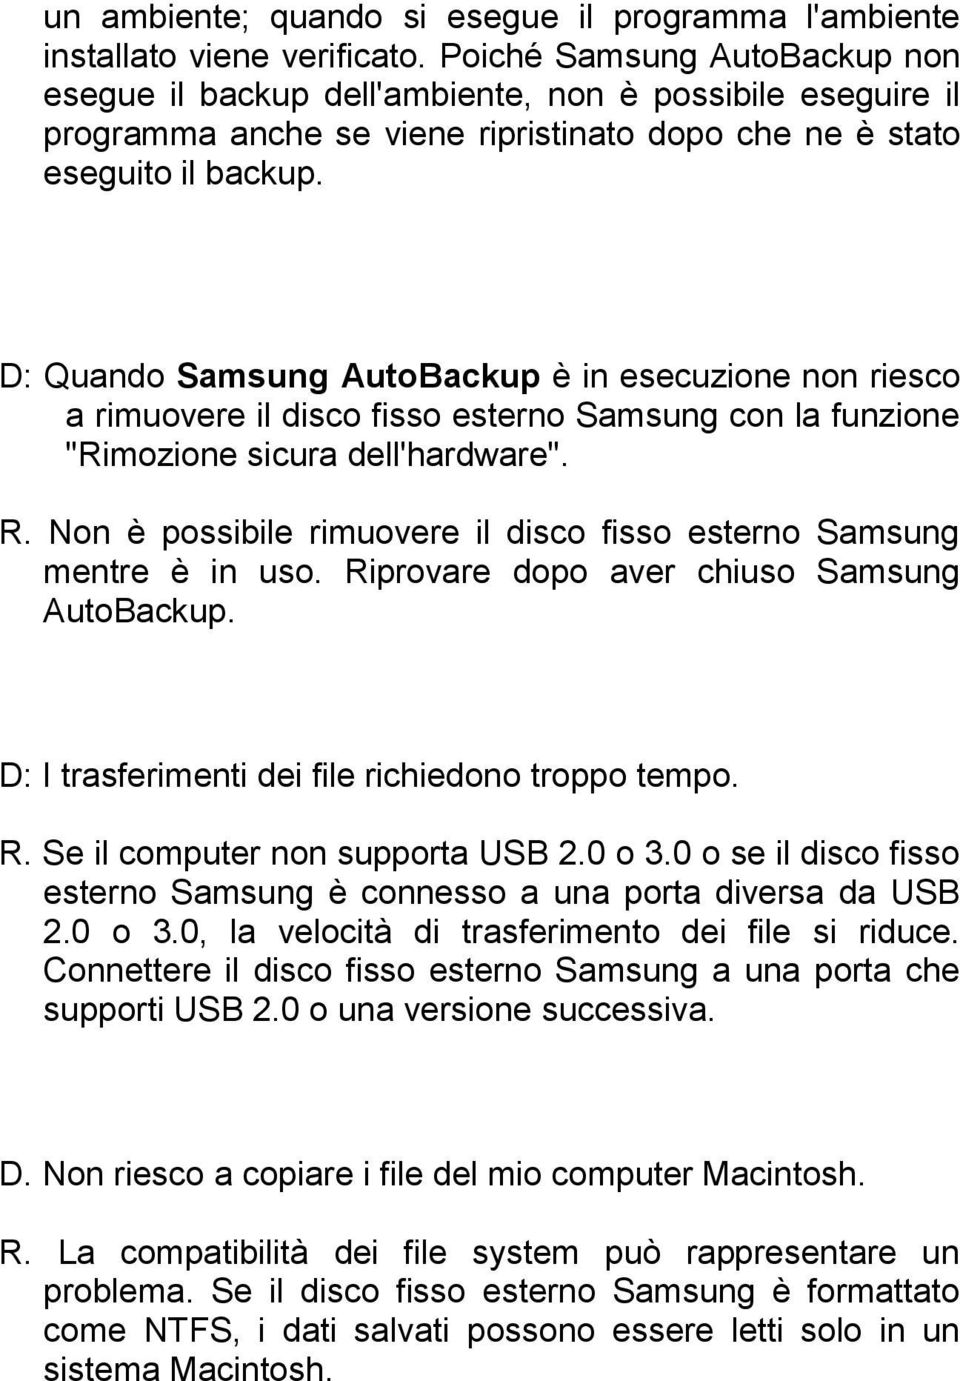 D: Quando Samsung AutoBackup è in esecuzione non riesco a rimuovere il disco fisso esterno Samsung con la funzione "Rimozione sicura dell'hardware". R.